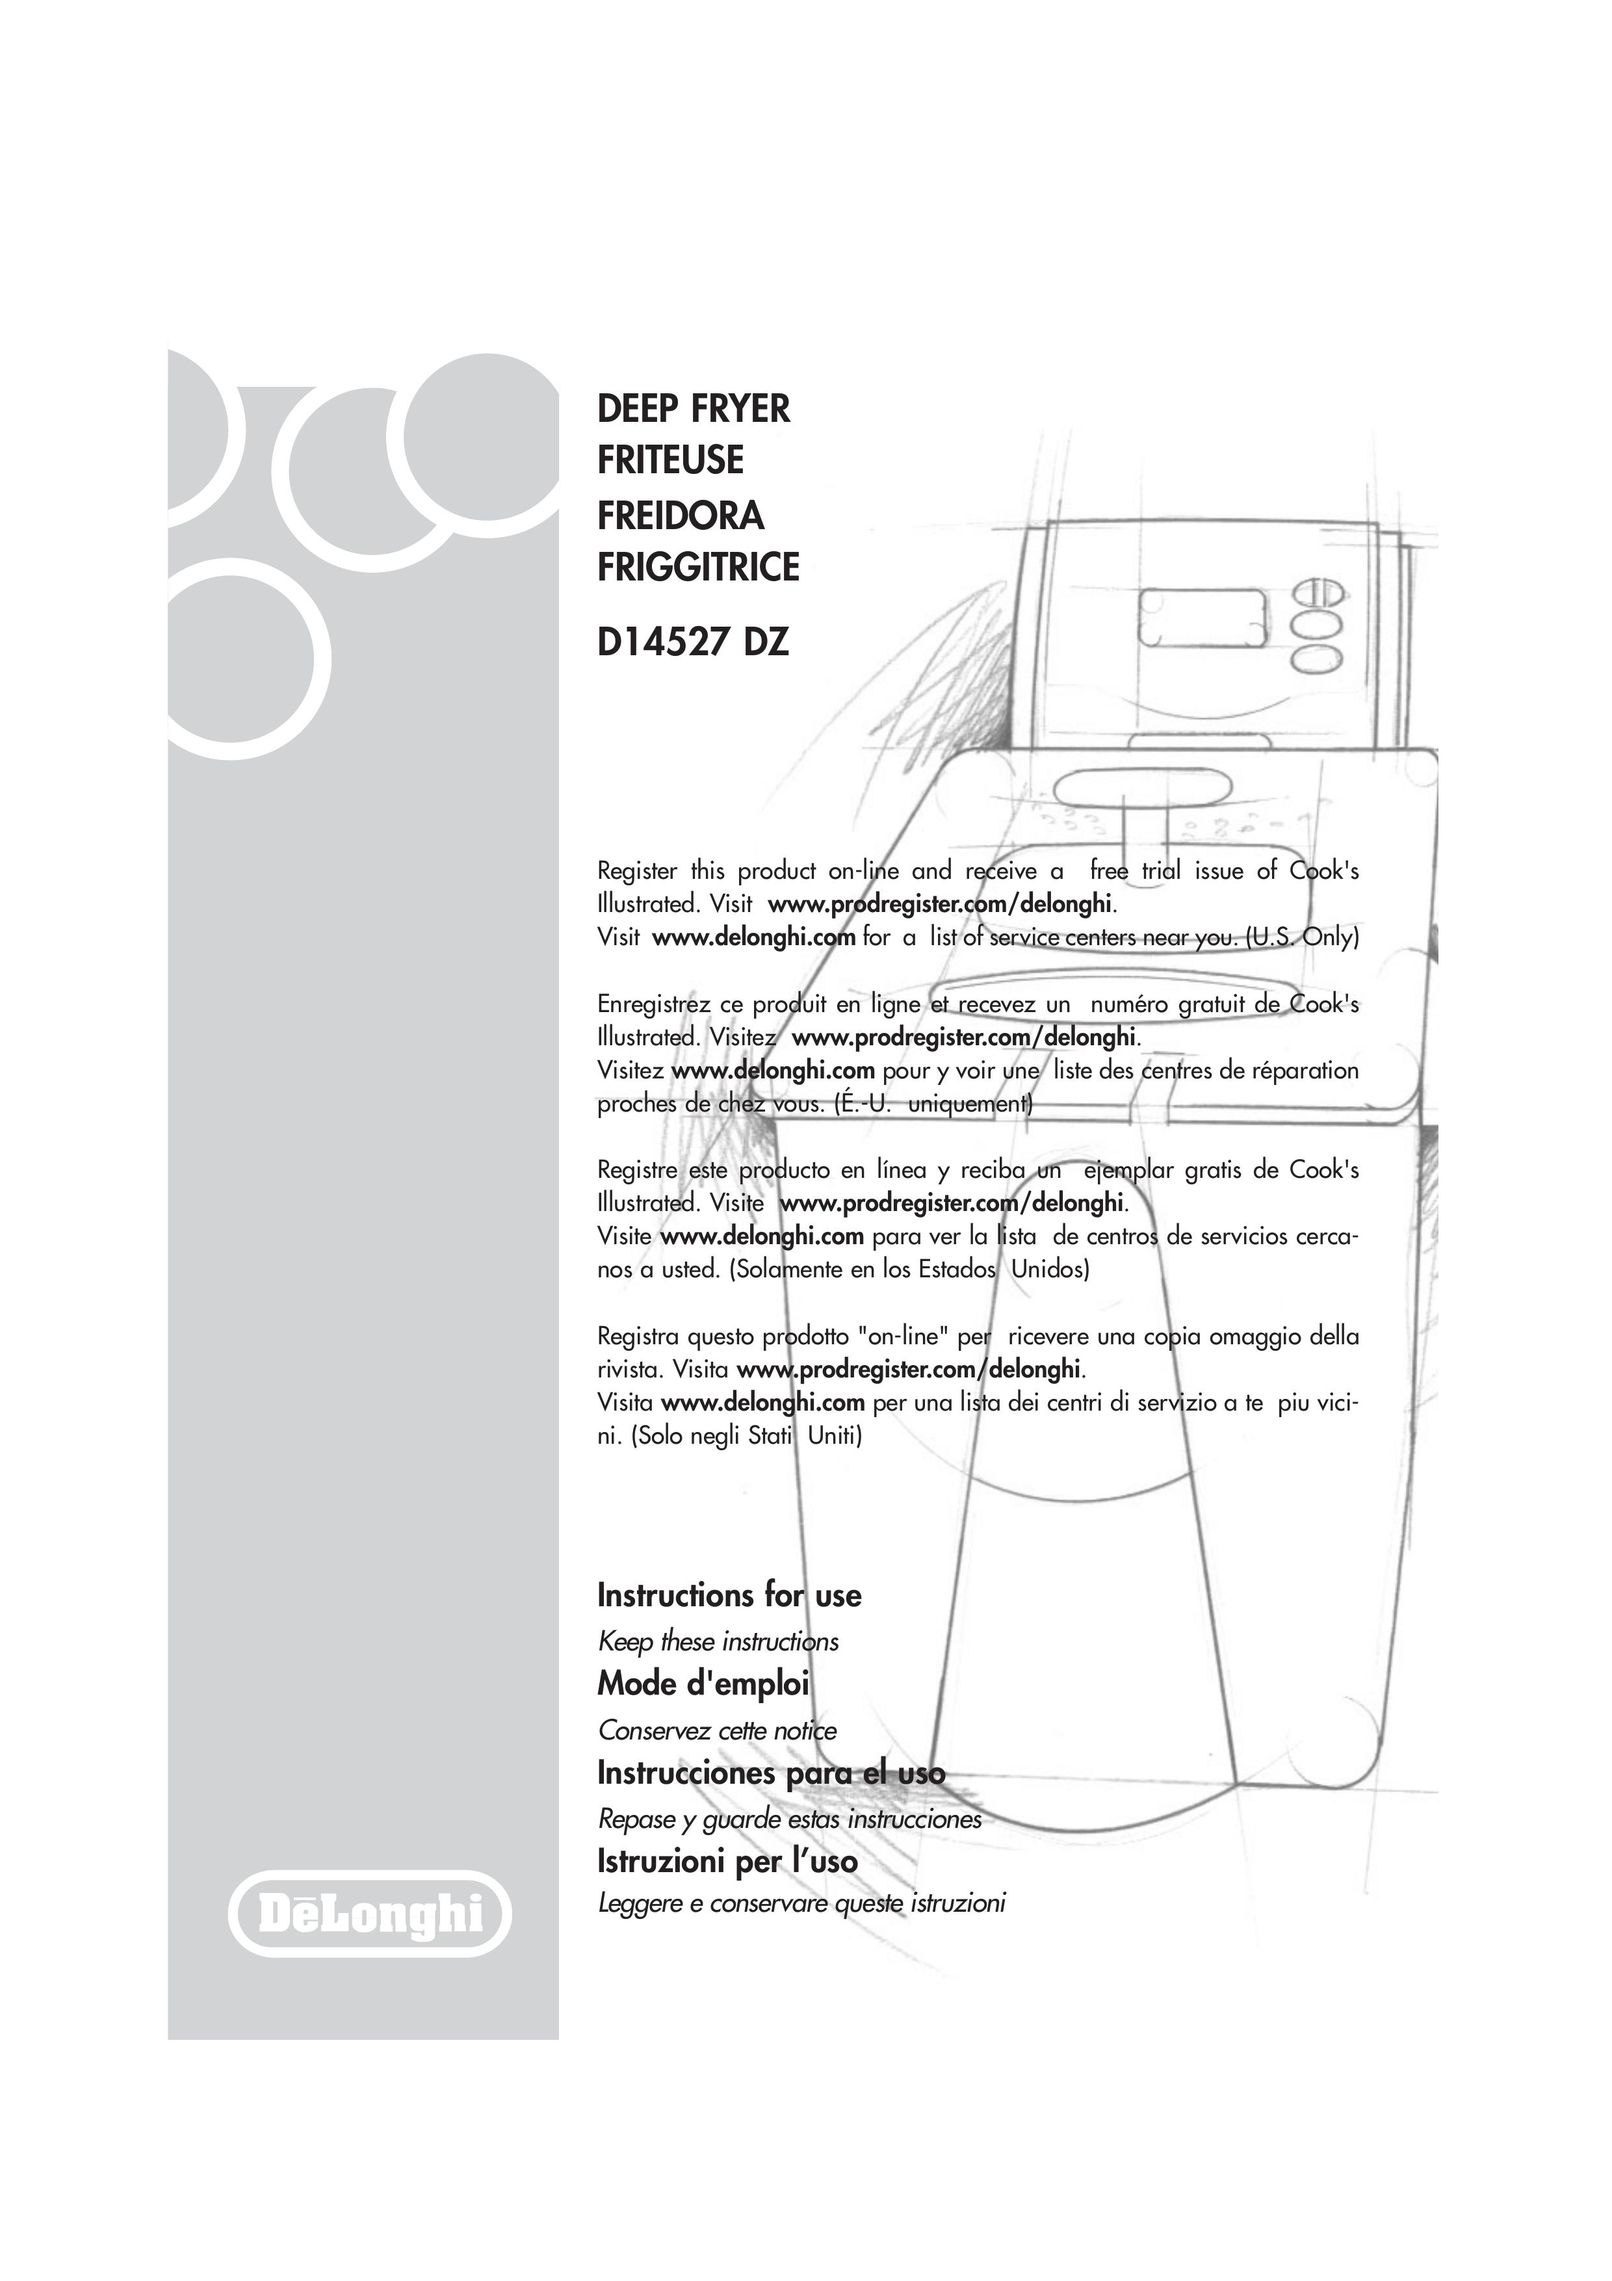 DeLonghi D14527DZ Fryer User Manual